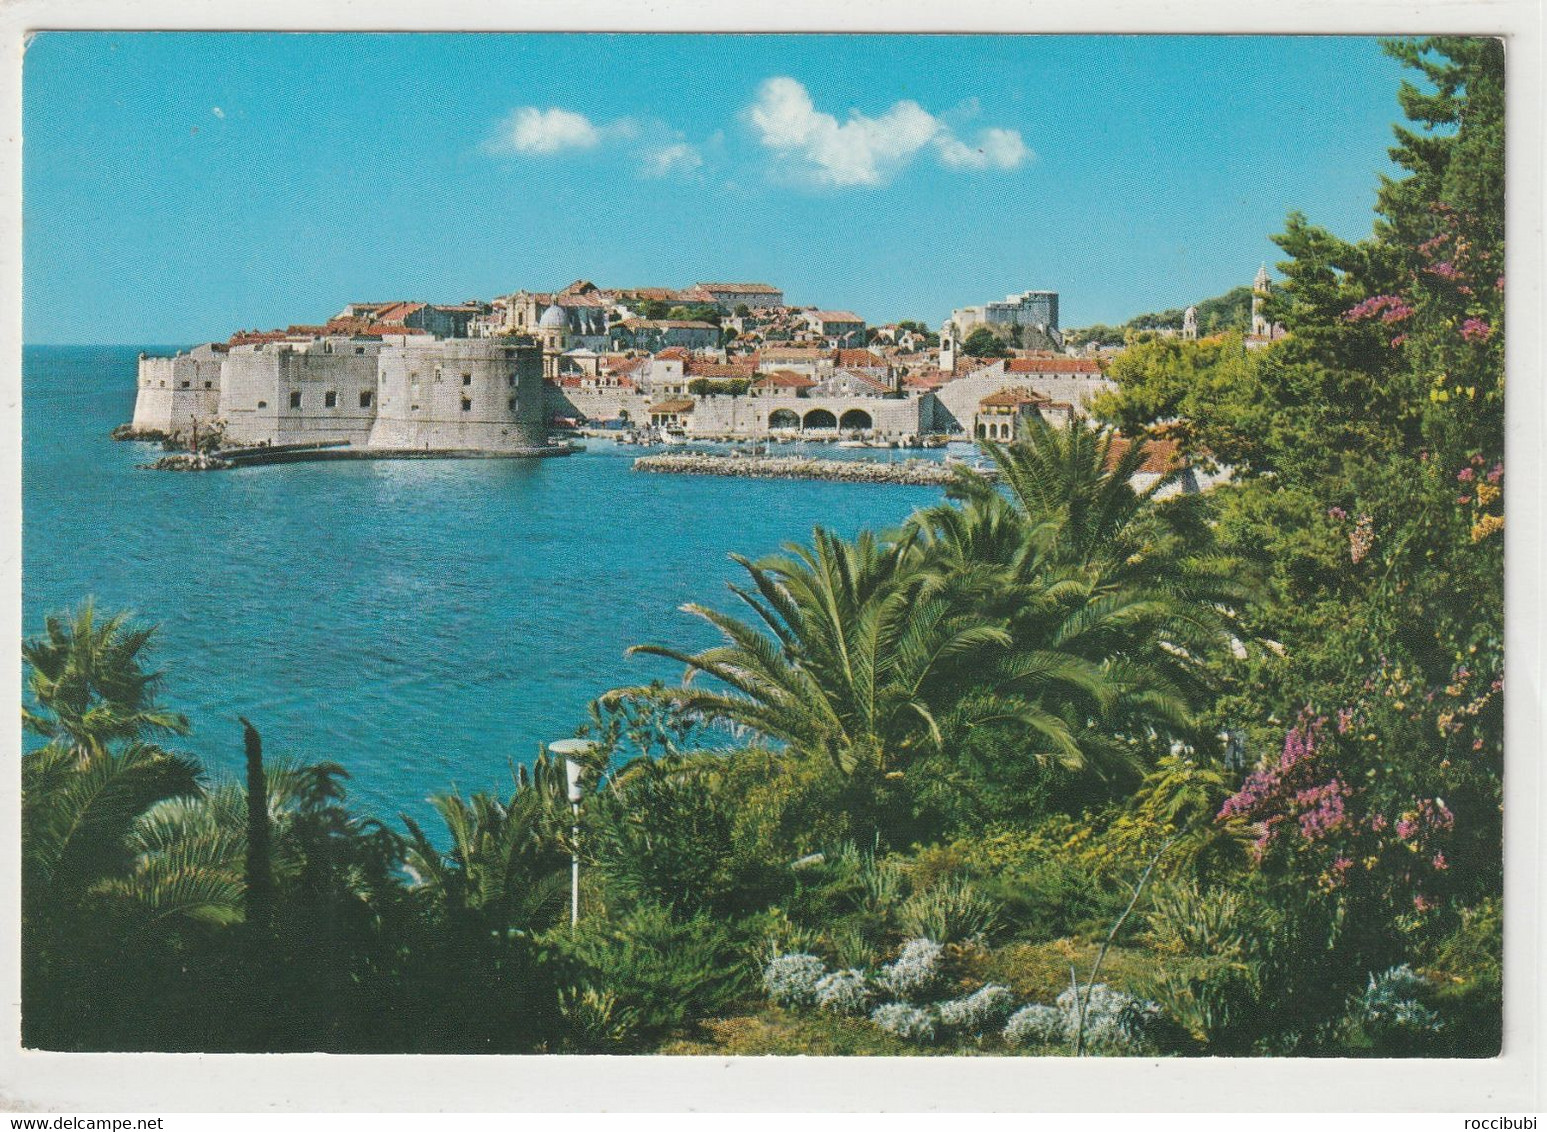 Dubrovnik, Kroatien - Kroatien